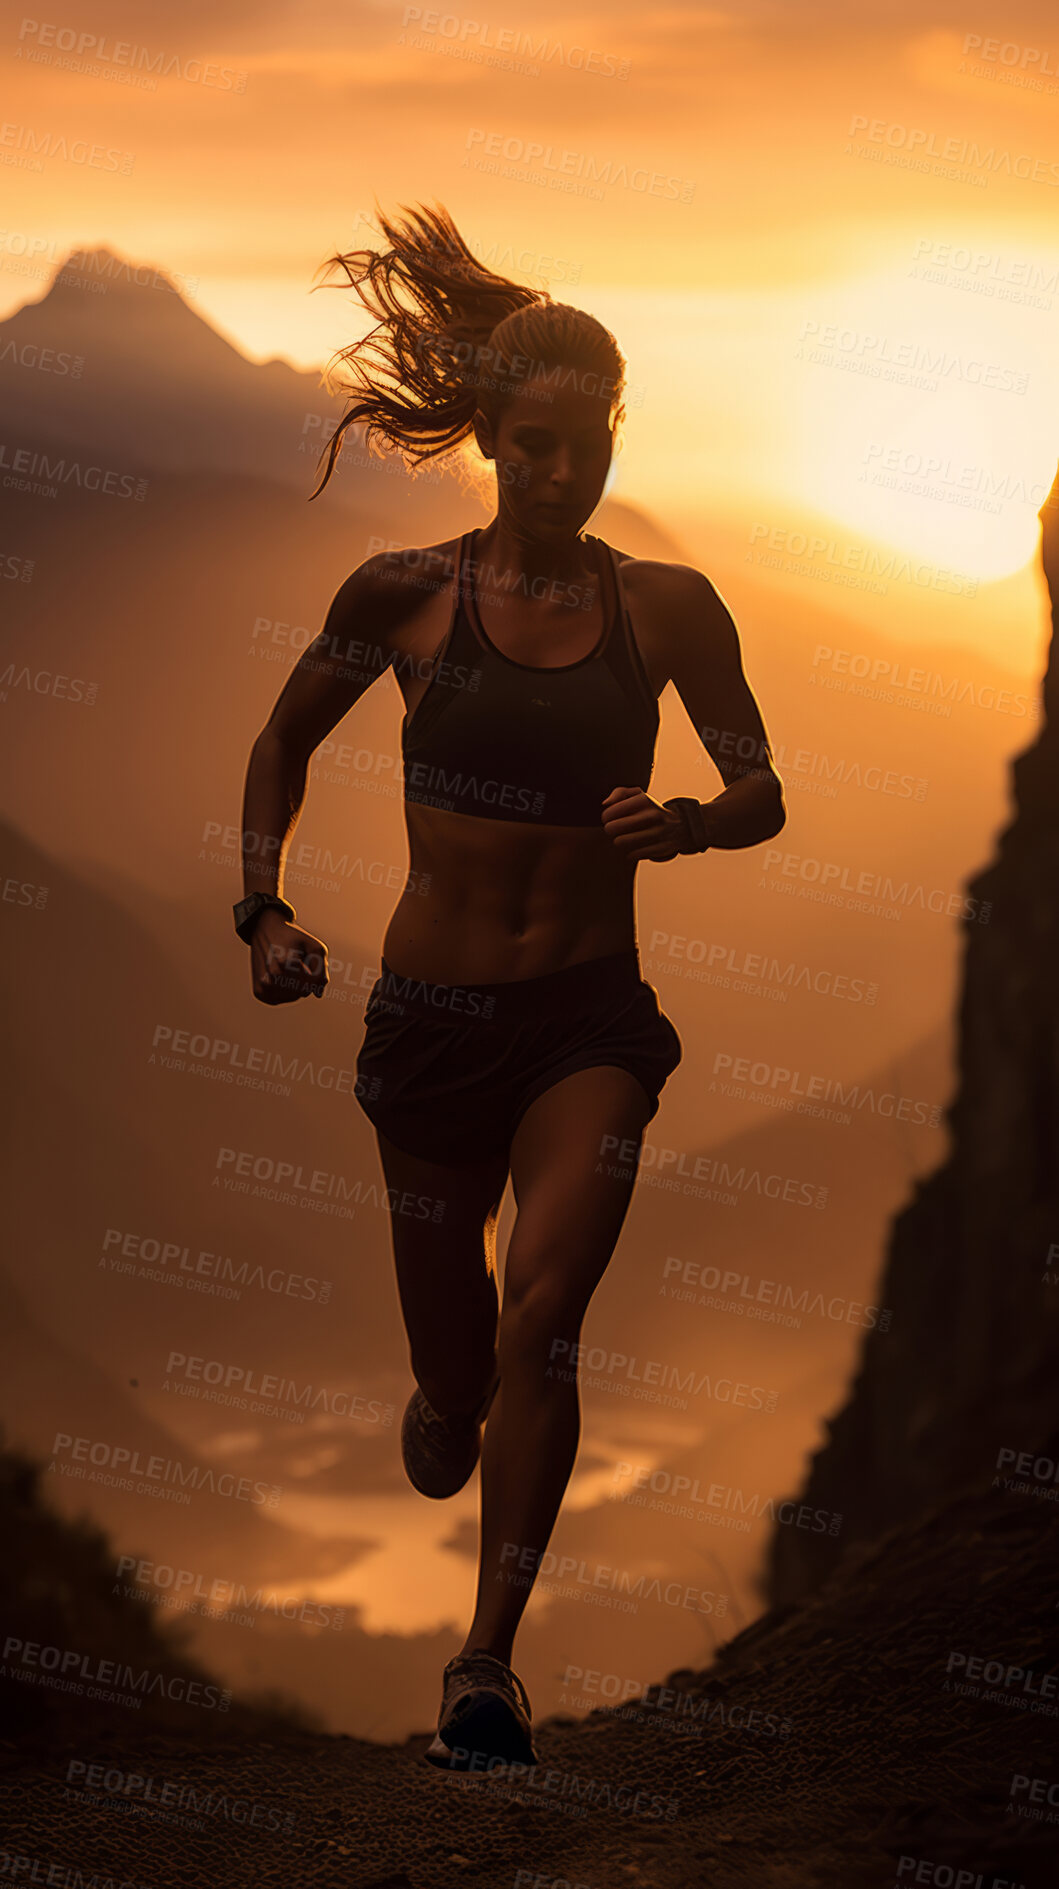 Buy stock photo Silhouette of trail runner running on mountain trail in sunset.
Fitness, sport, runner Concept.